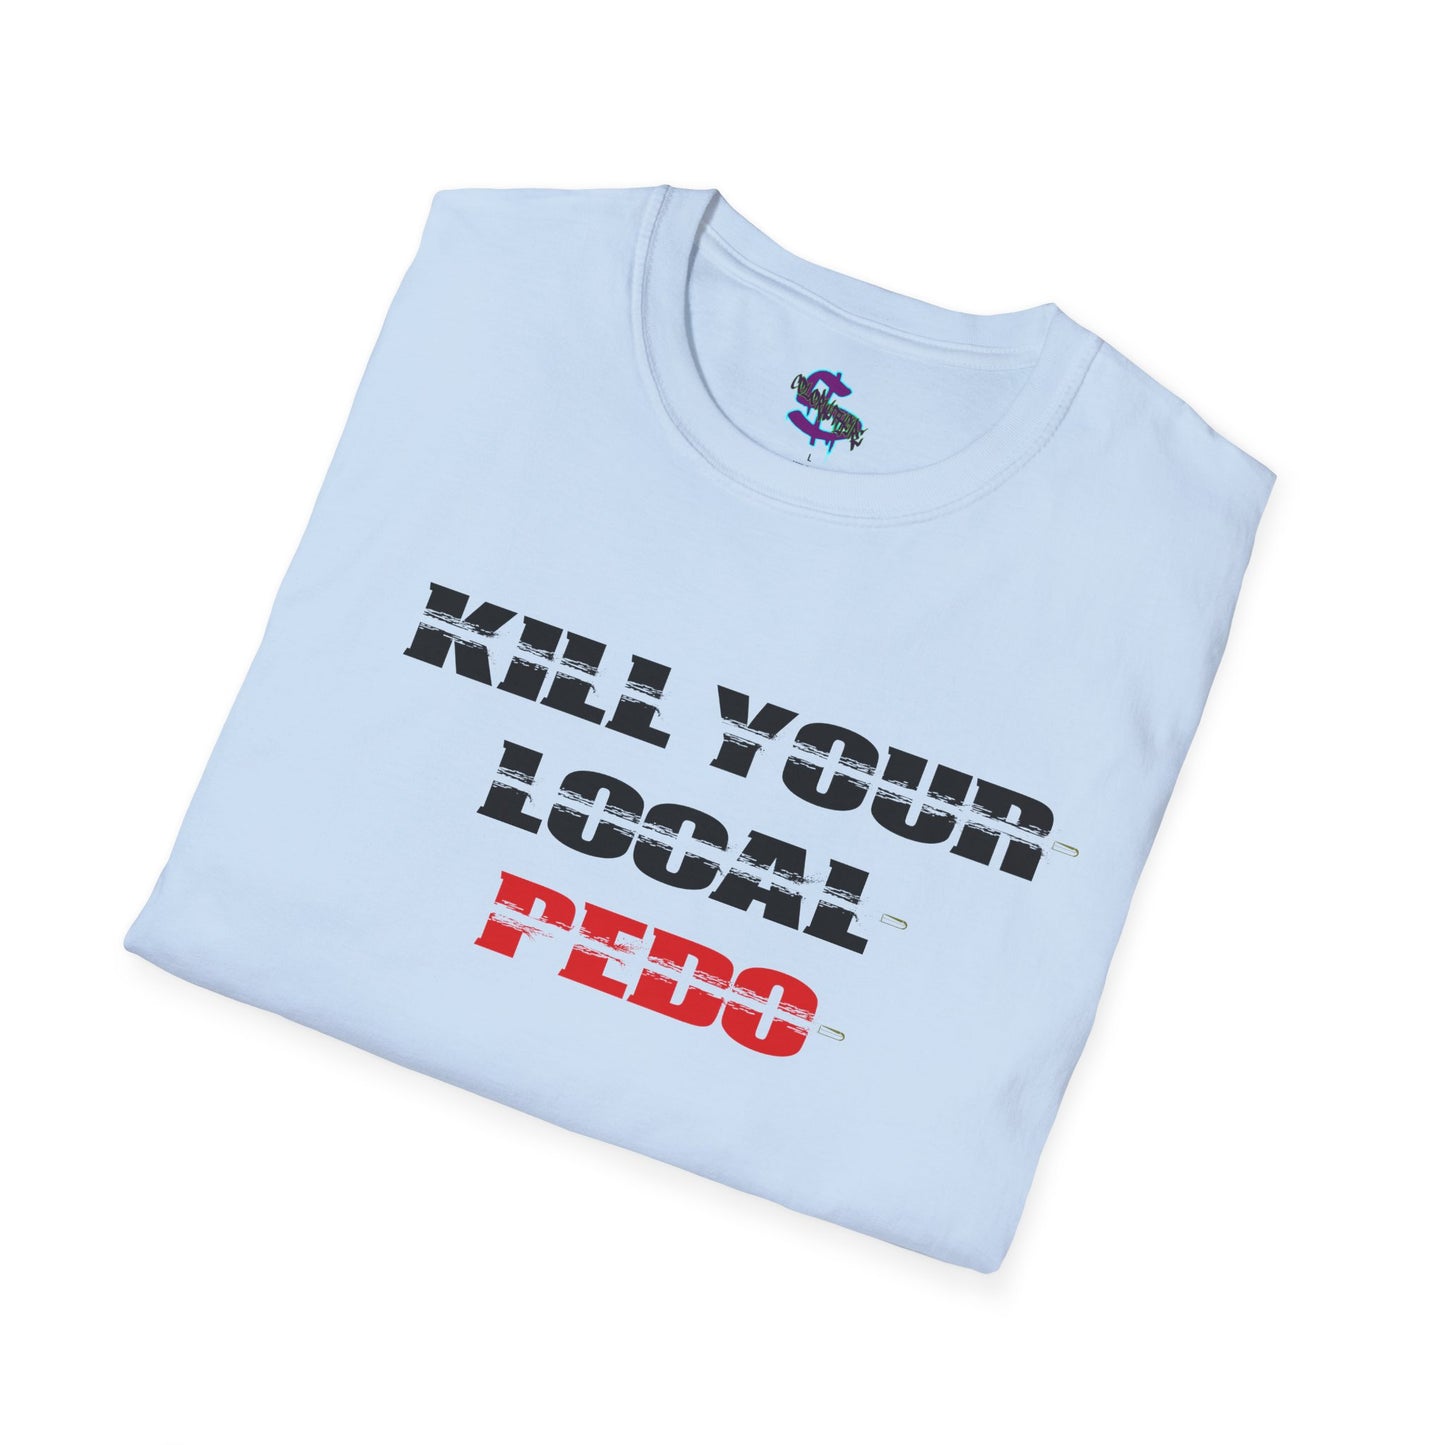 2 - Kill your local pedo